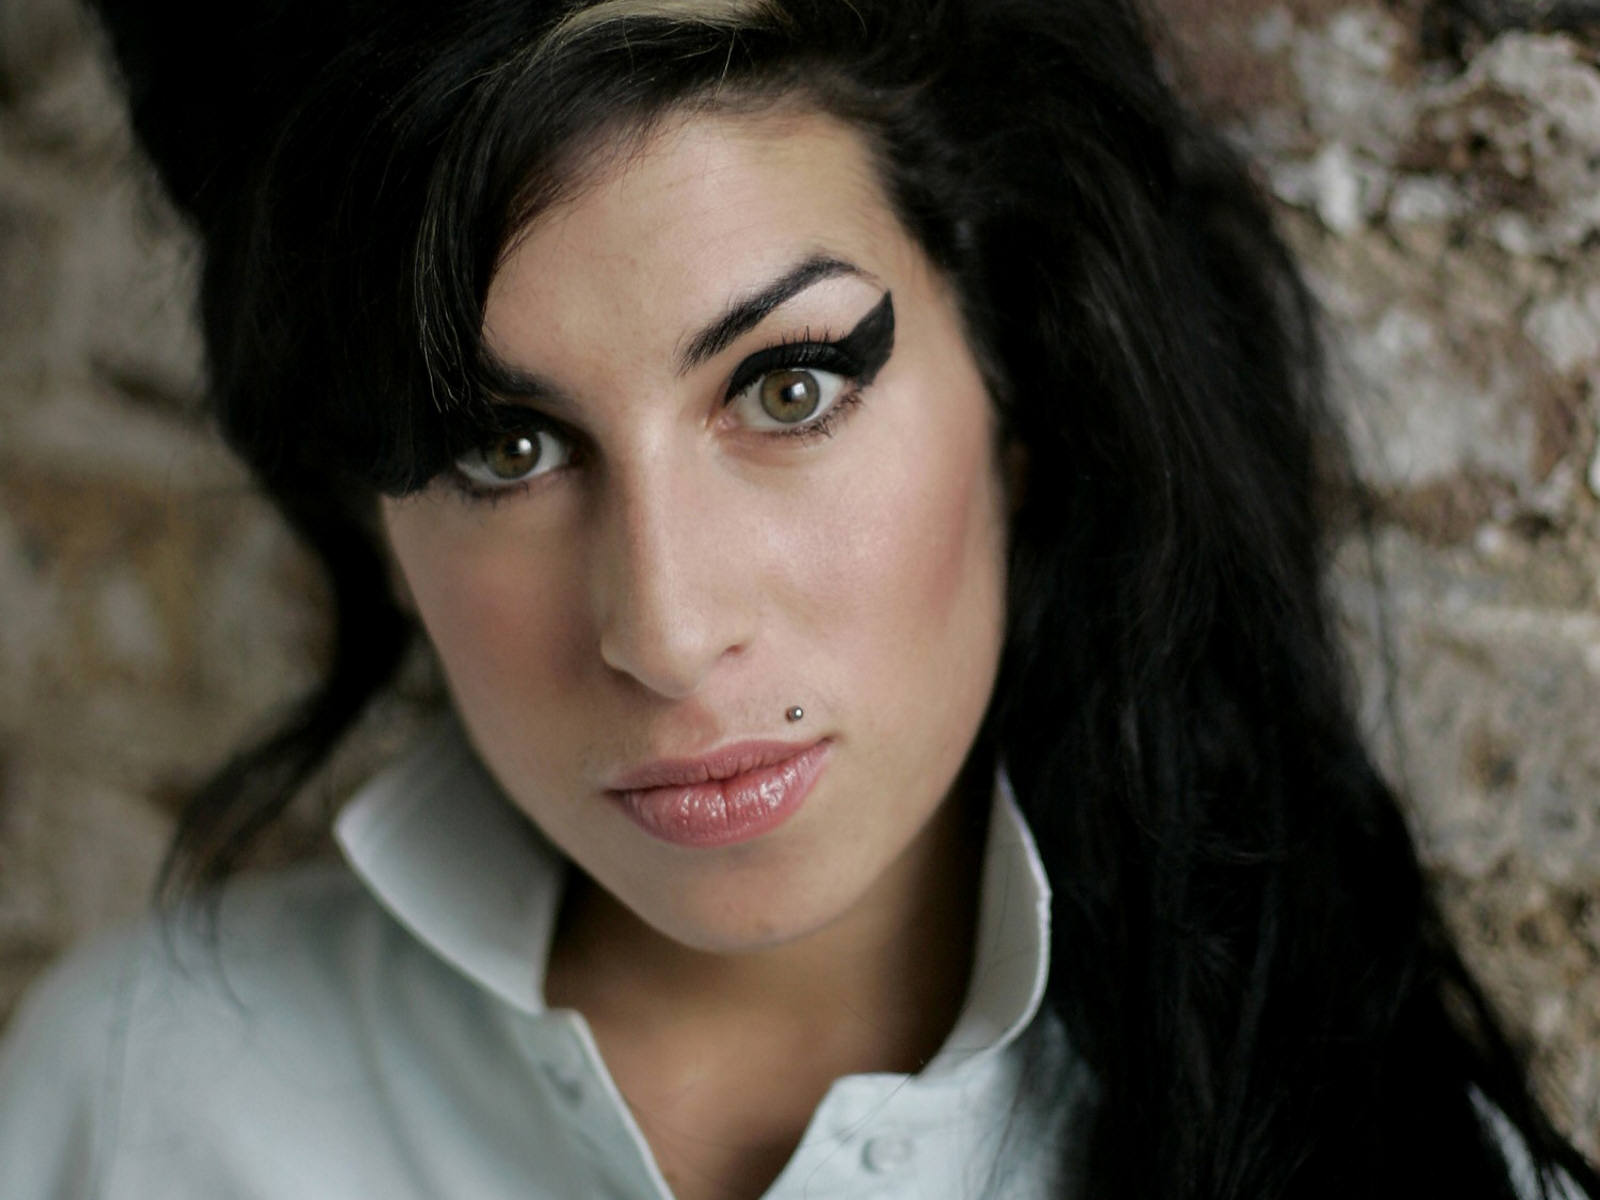 http://3.bp.blogspot.com/-daAi4b6RMjY/TjHJlhagbzI/AAAAAAAAB3s/5SrV1n2q1c4/s1600/Amy+Winehouse.jpg